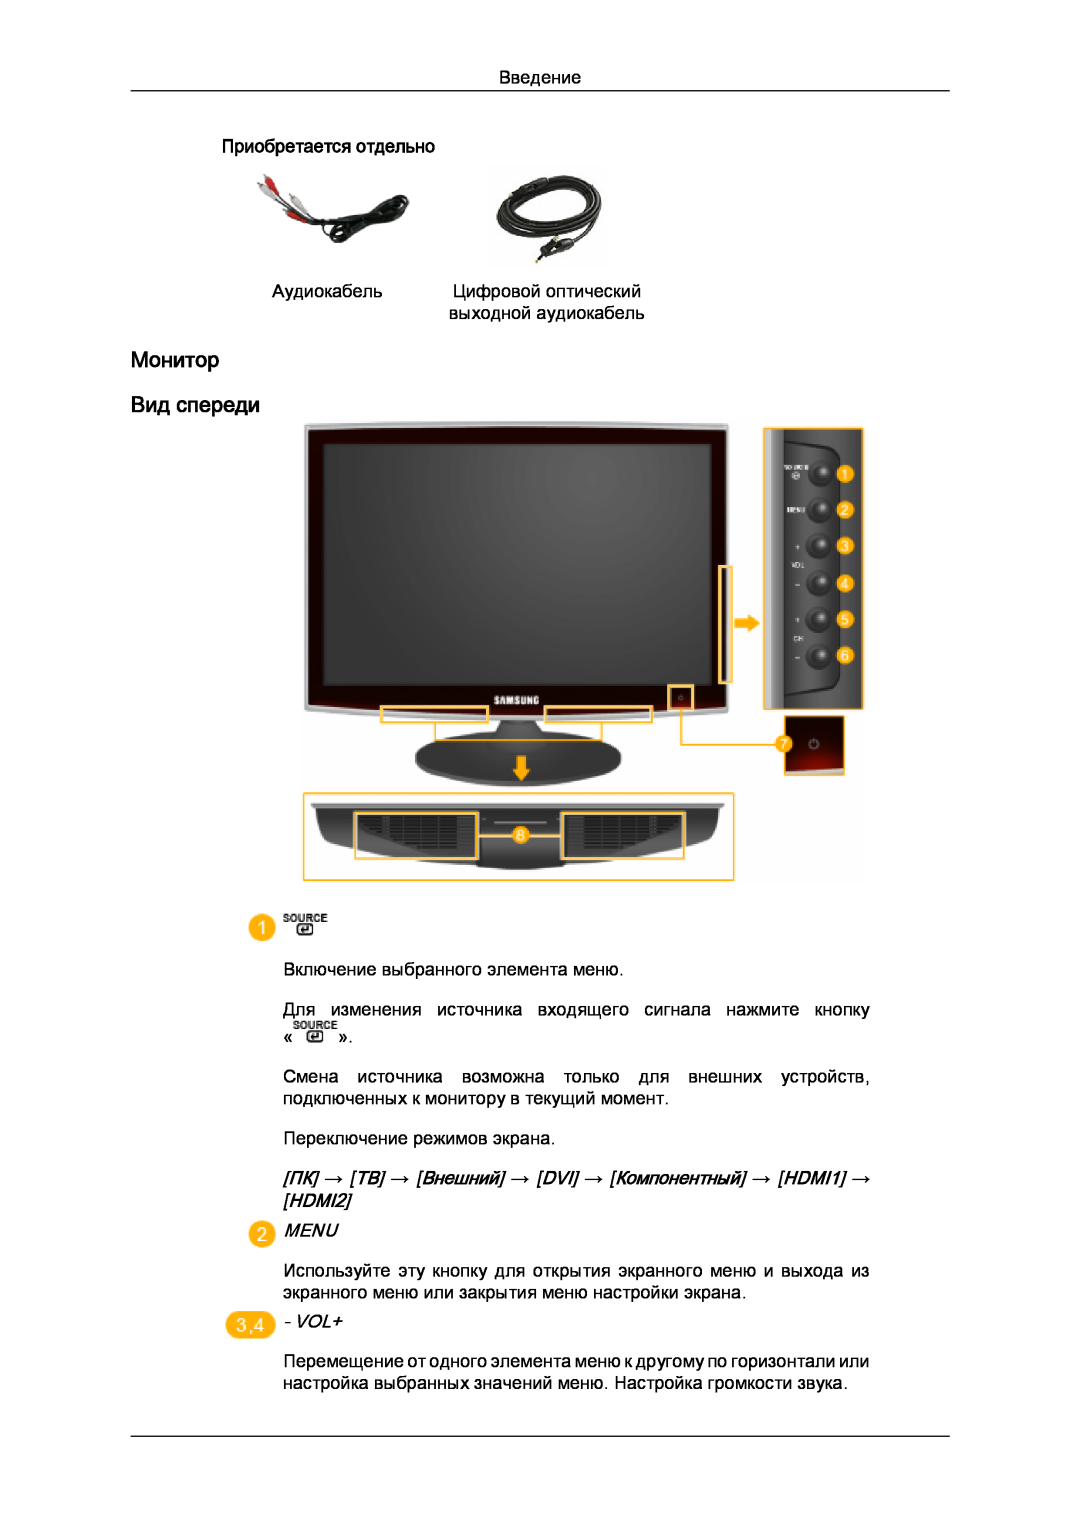 Samsung LS20TDDSUV/EN Монитор Вид спереди, Приобретается отдельно, ПК → ТВ → Внешний → DVI → Компонентный → HDMI1 → HDMI2 